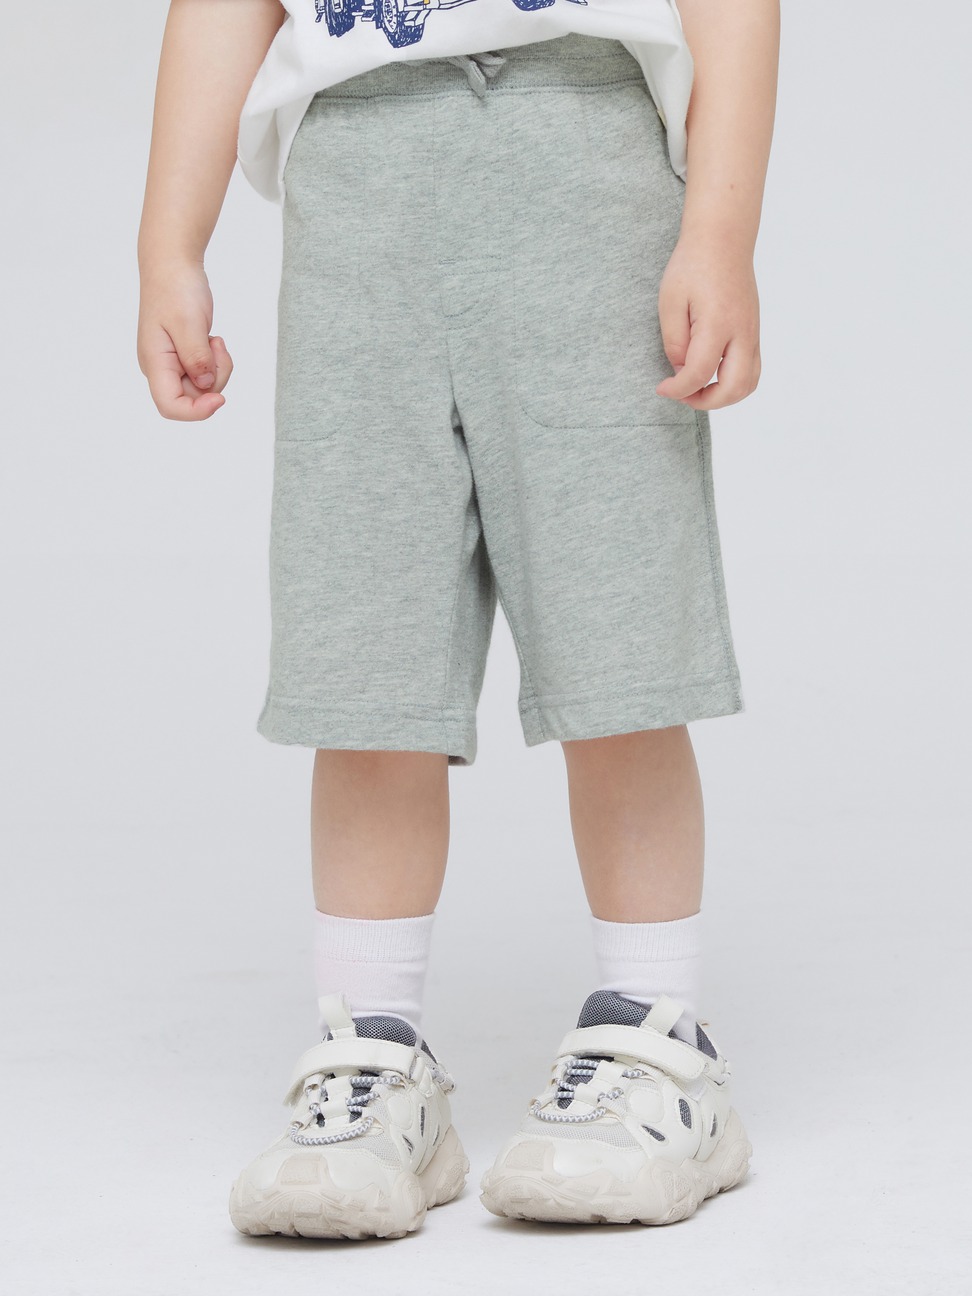 男幼童裝|純棉簡約運動短褲 布萊納系列-淺灰色